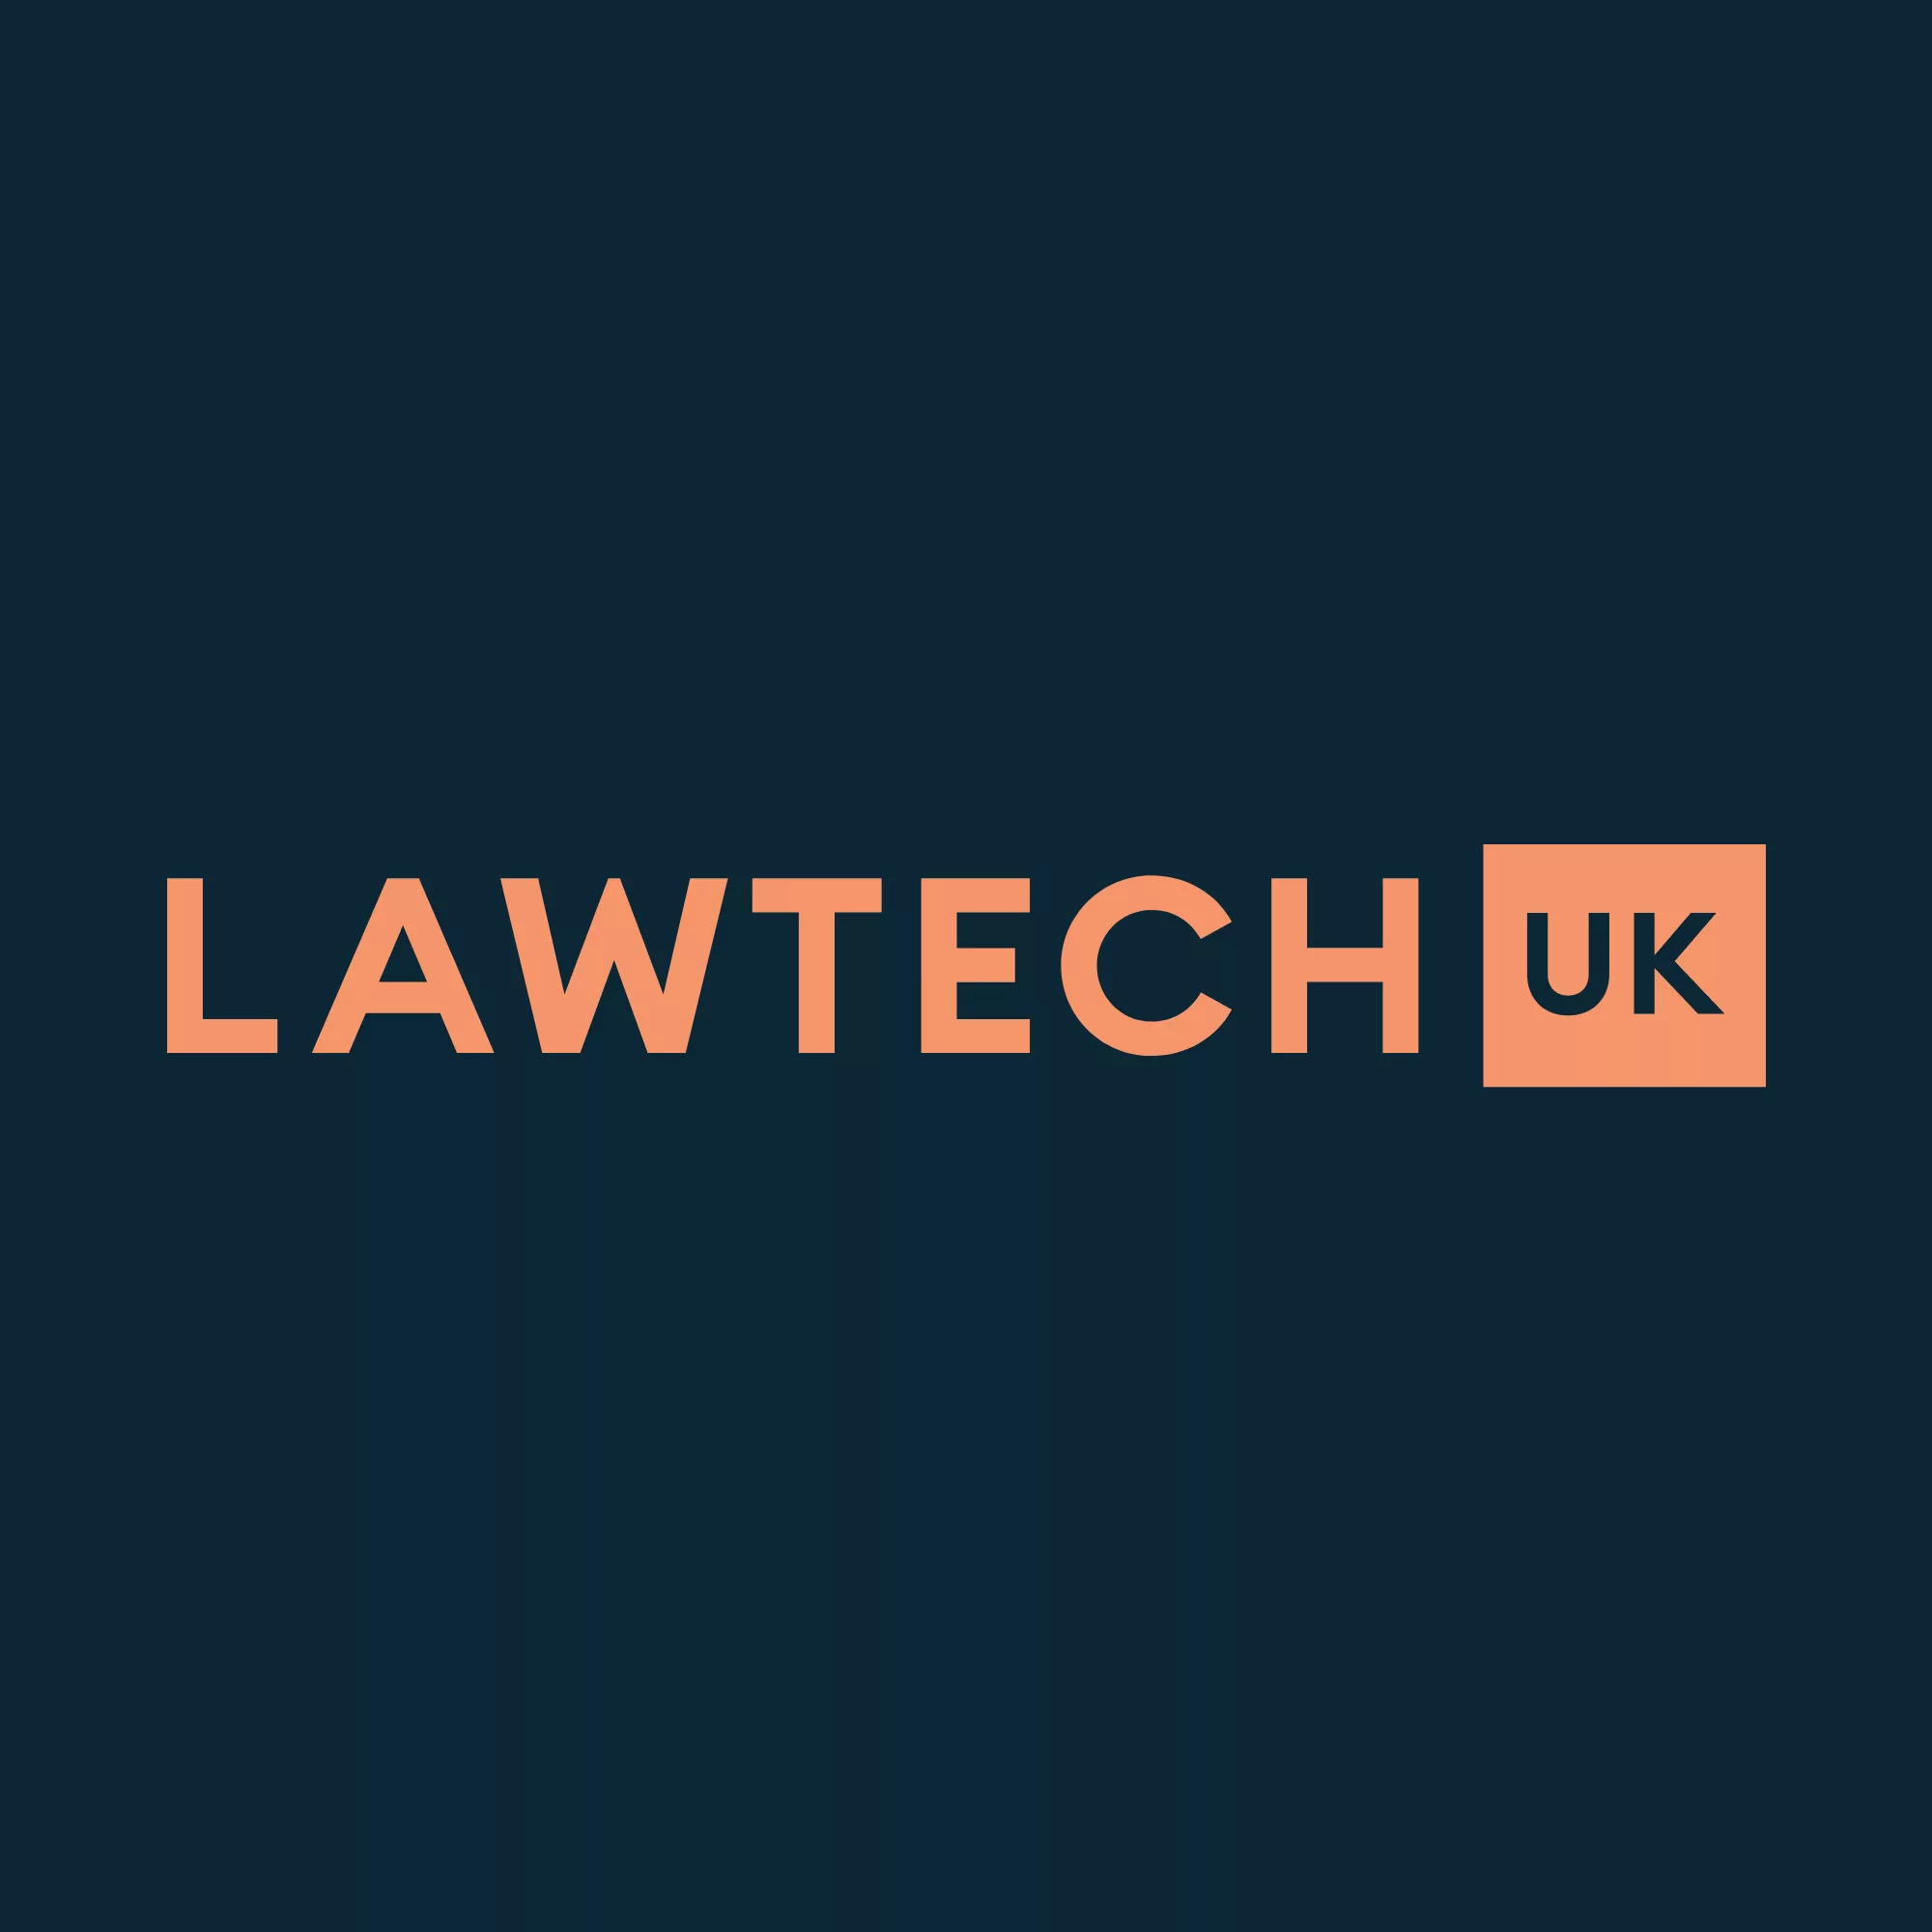 LawtechUK-logo